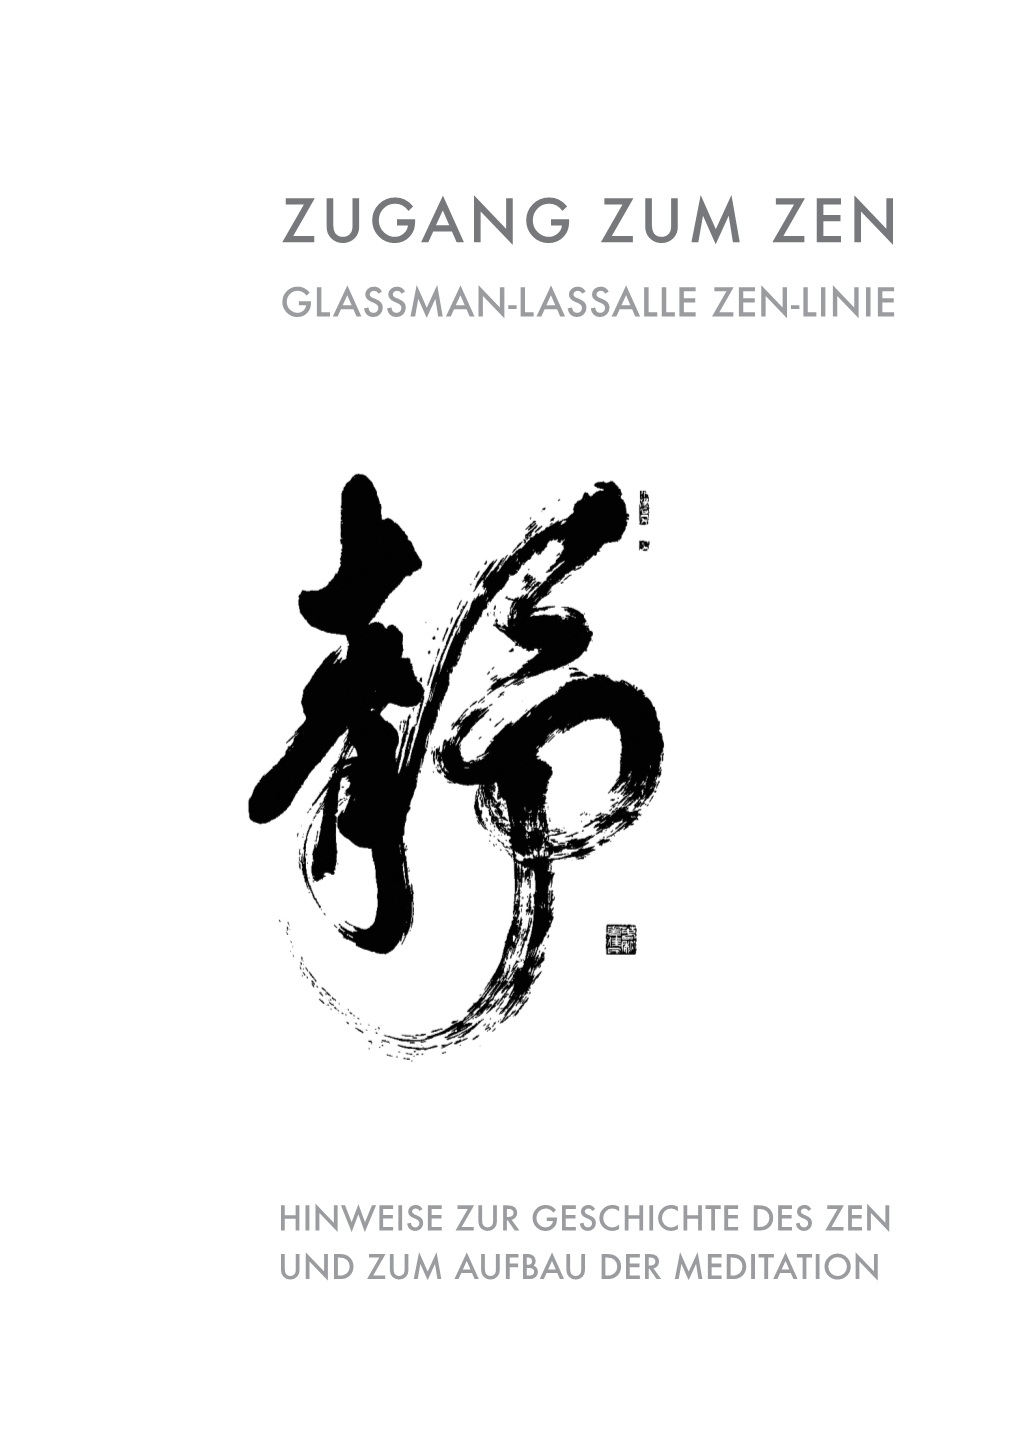 Zugang Zum Zen Glassman-Lassalle Zen-Linie